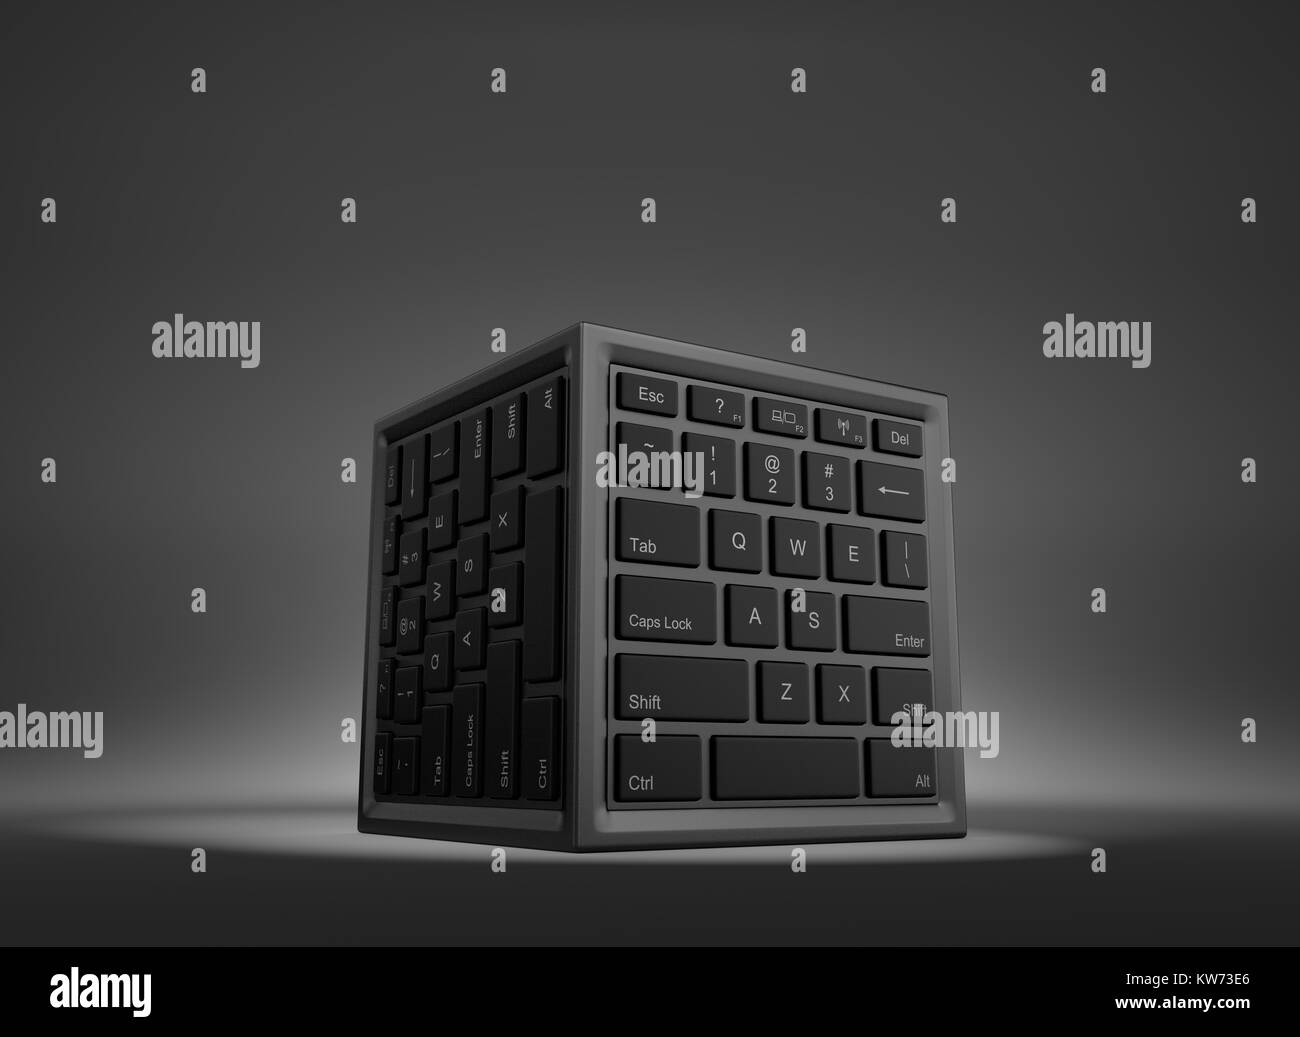 Forme de cube avec clavier de l'ordinateur sur des visages 3D Illustration Banque D'Images